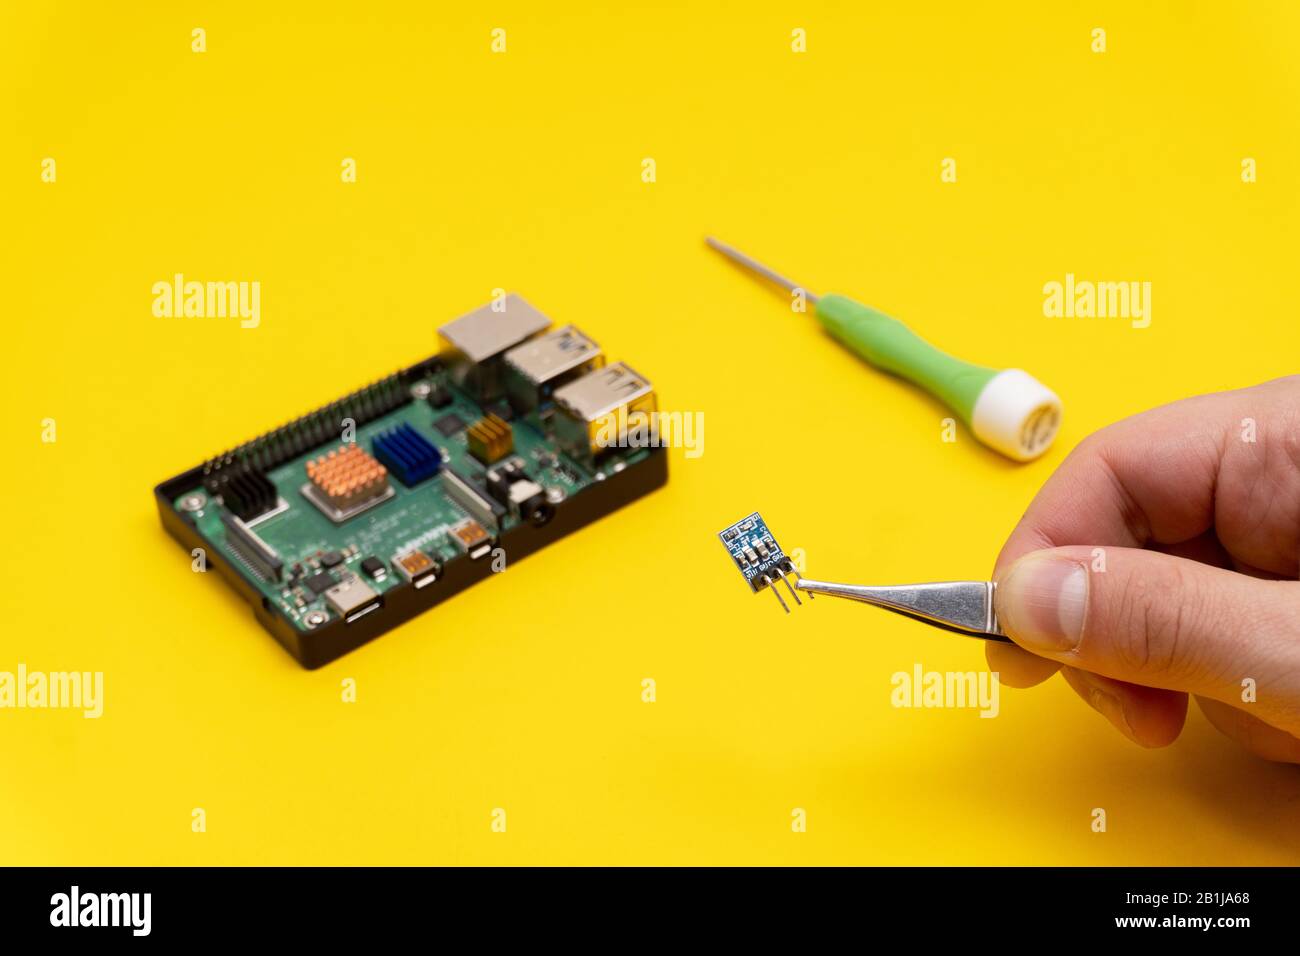 Mikrocomputer, scrwdriver auf gelbem Hintergrund Stockfoto